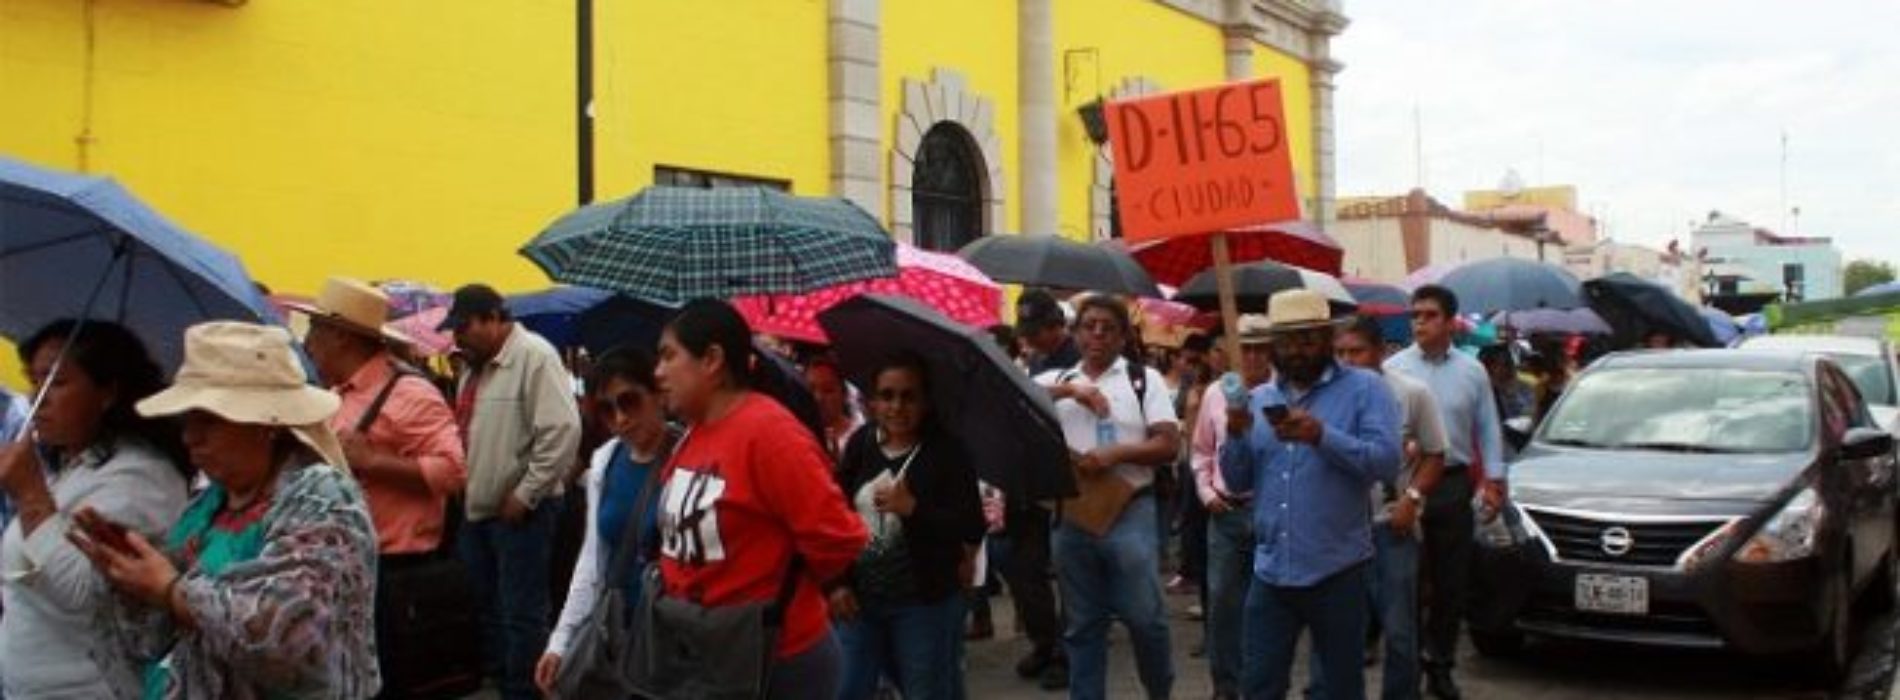 Sección 22 rechaza a sus compañeros que ahora son
legisladores en Oaxaca